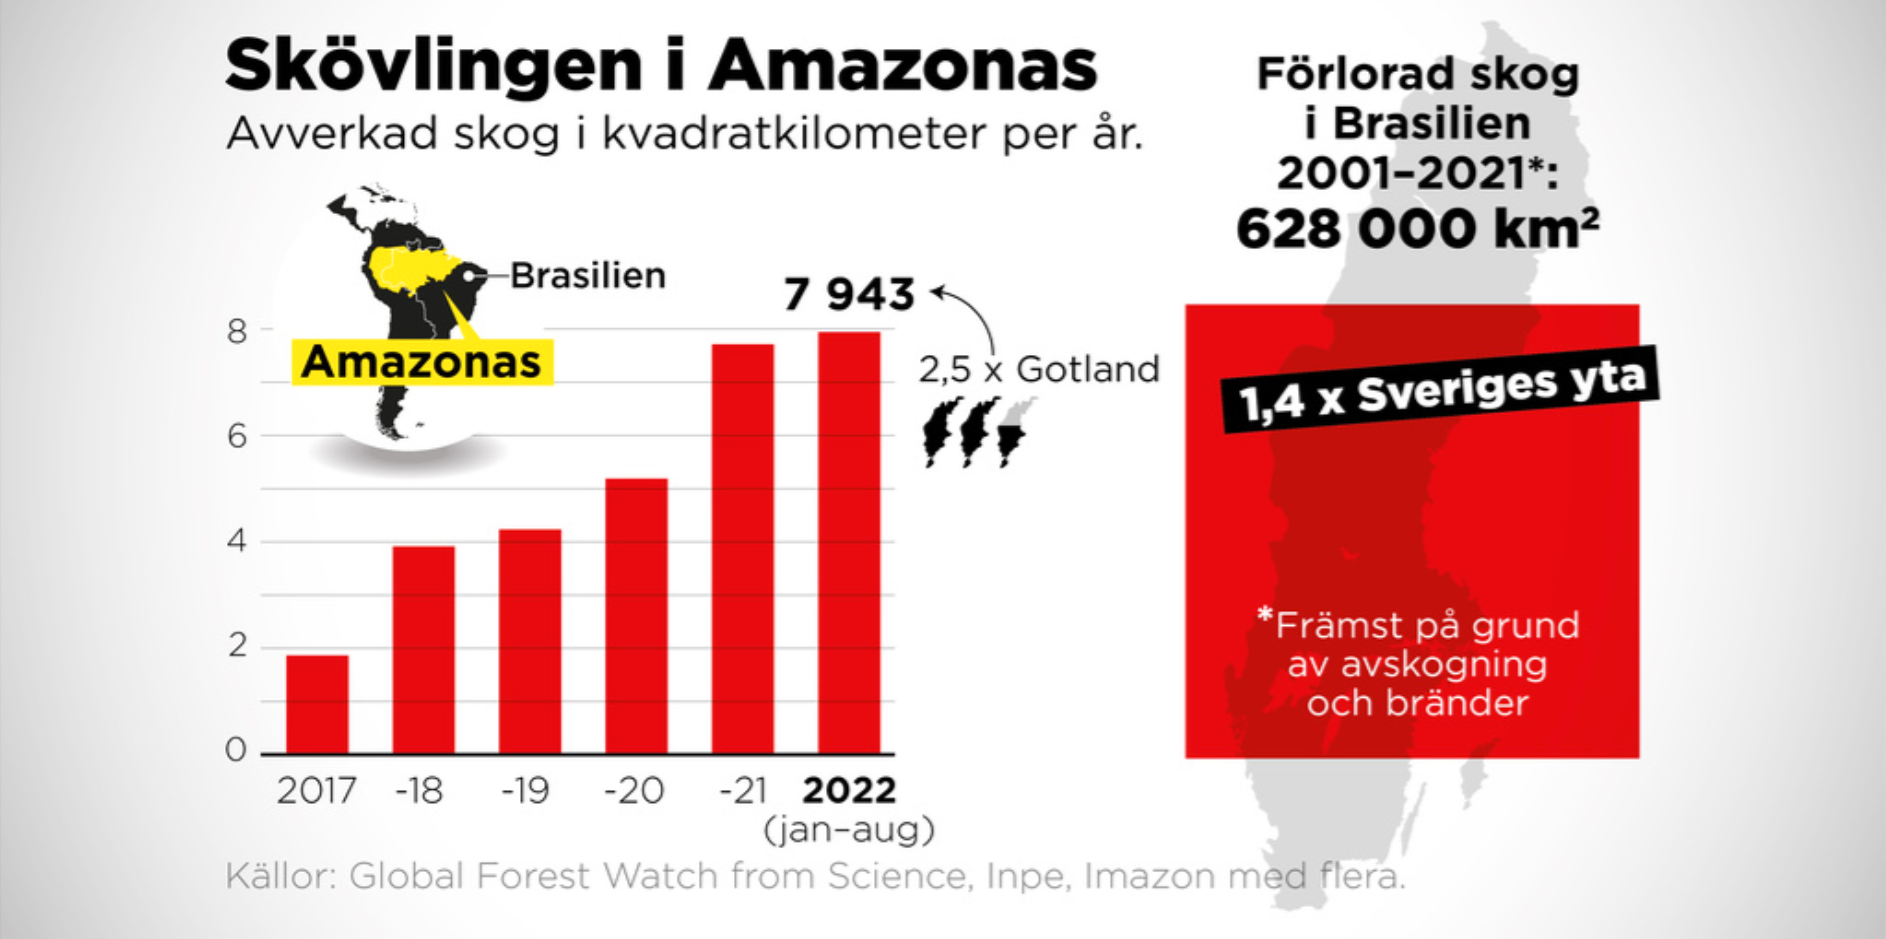 Hittills i år har 7 943 kvadratkilometer skog avverkats i Amazonas, ett område två och en halv gånger så stort som Gotland.